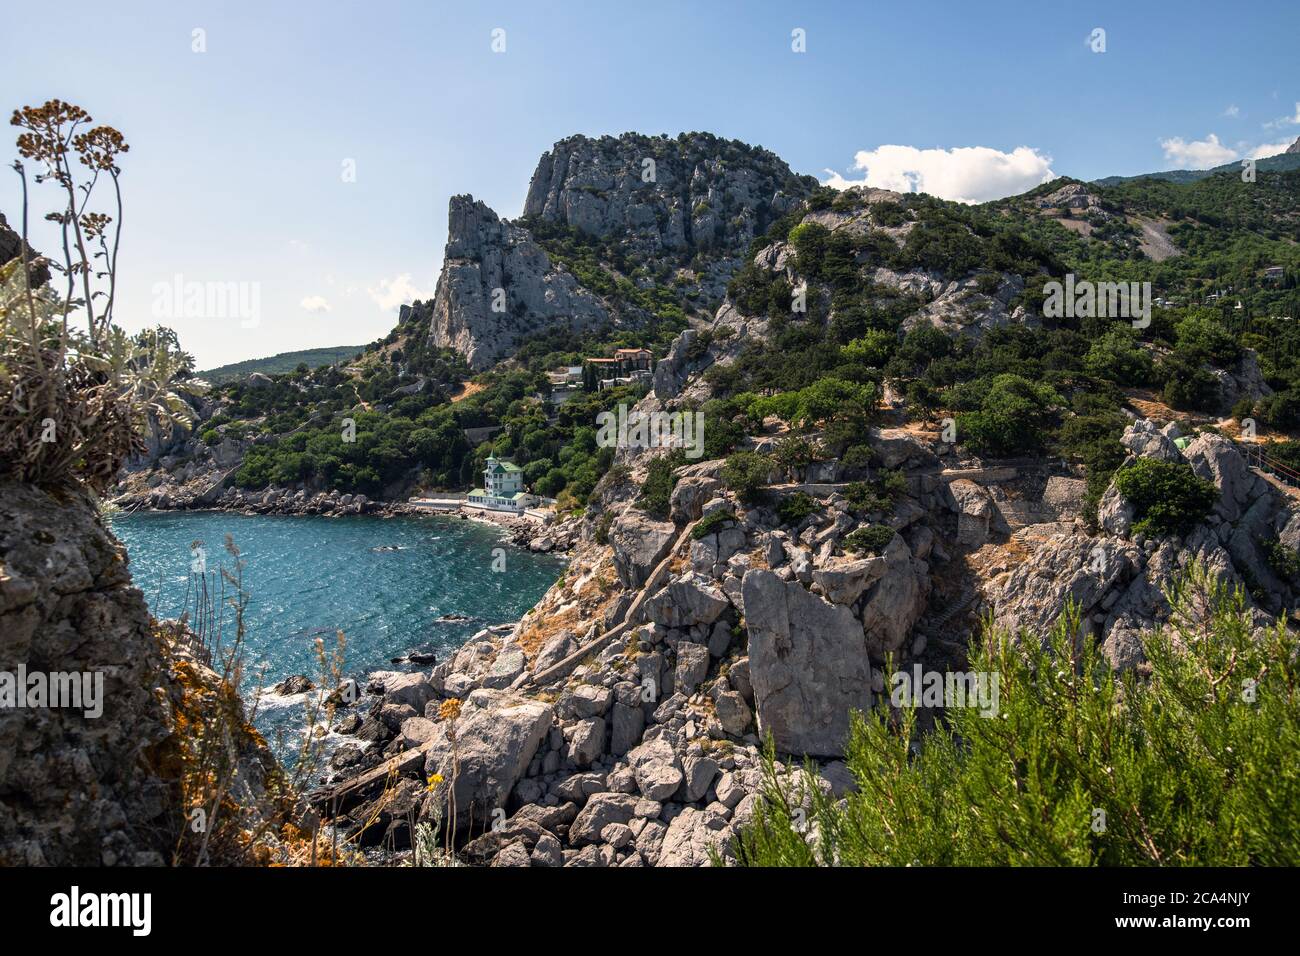 Landscape of a Koshka mountain with the Black Sea in Crimea Stock Photo